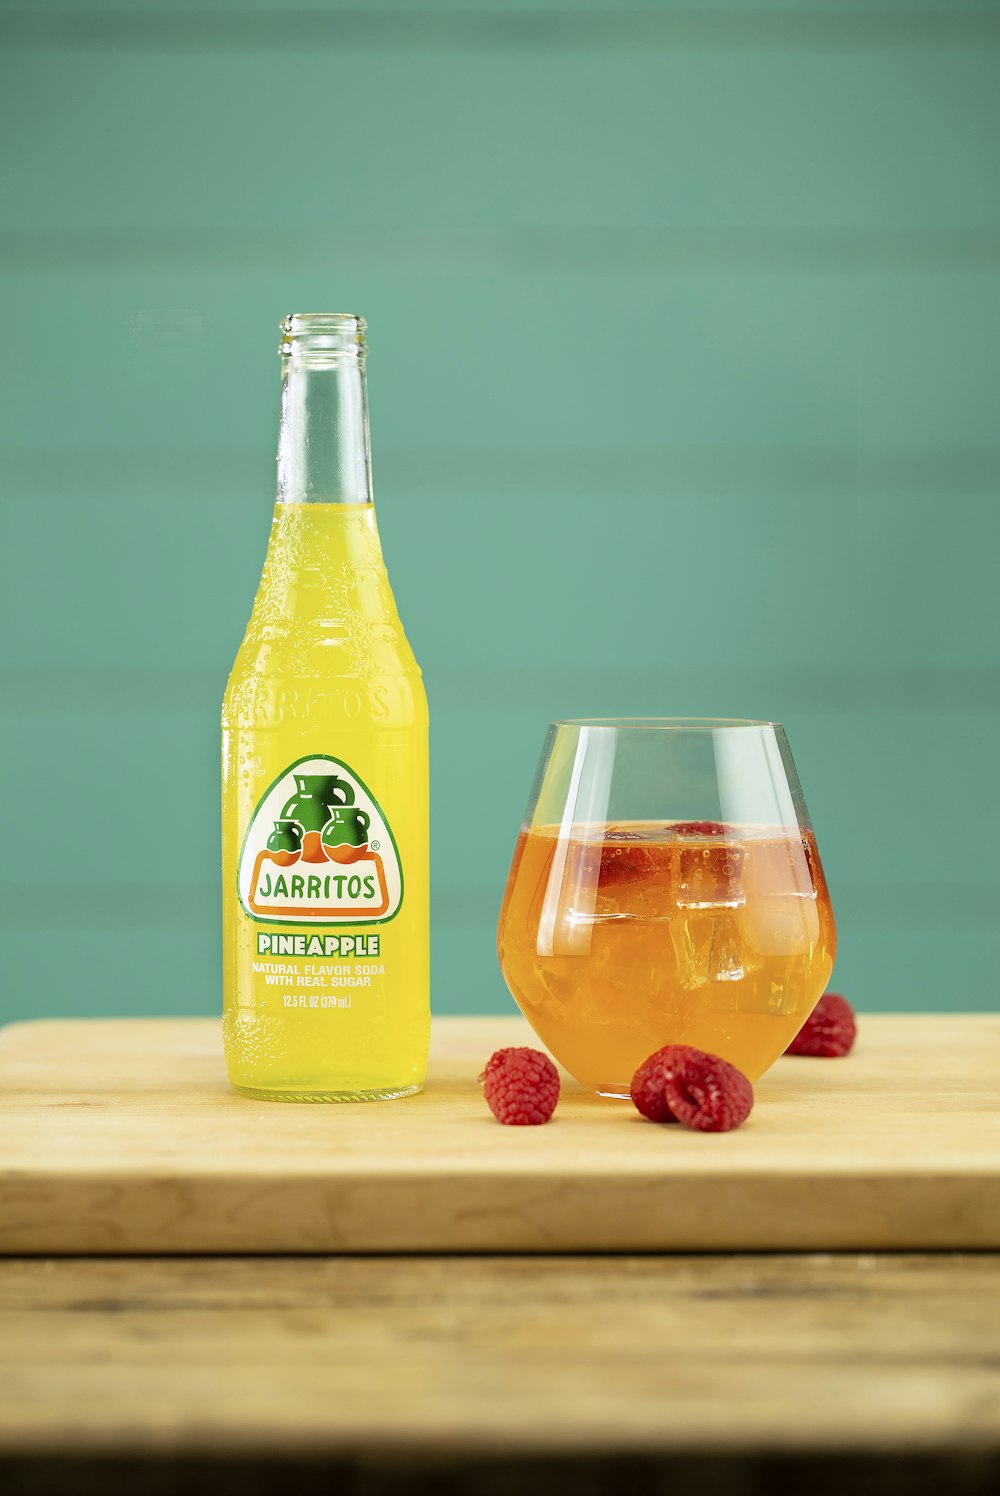 orange juice bottle beside clear drinking glass